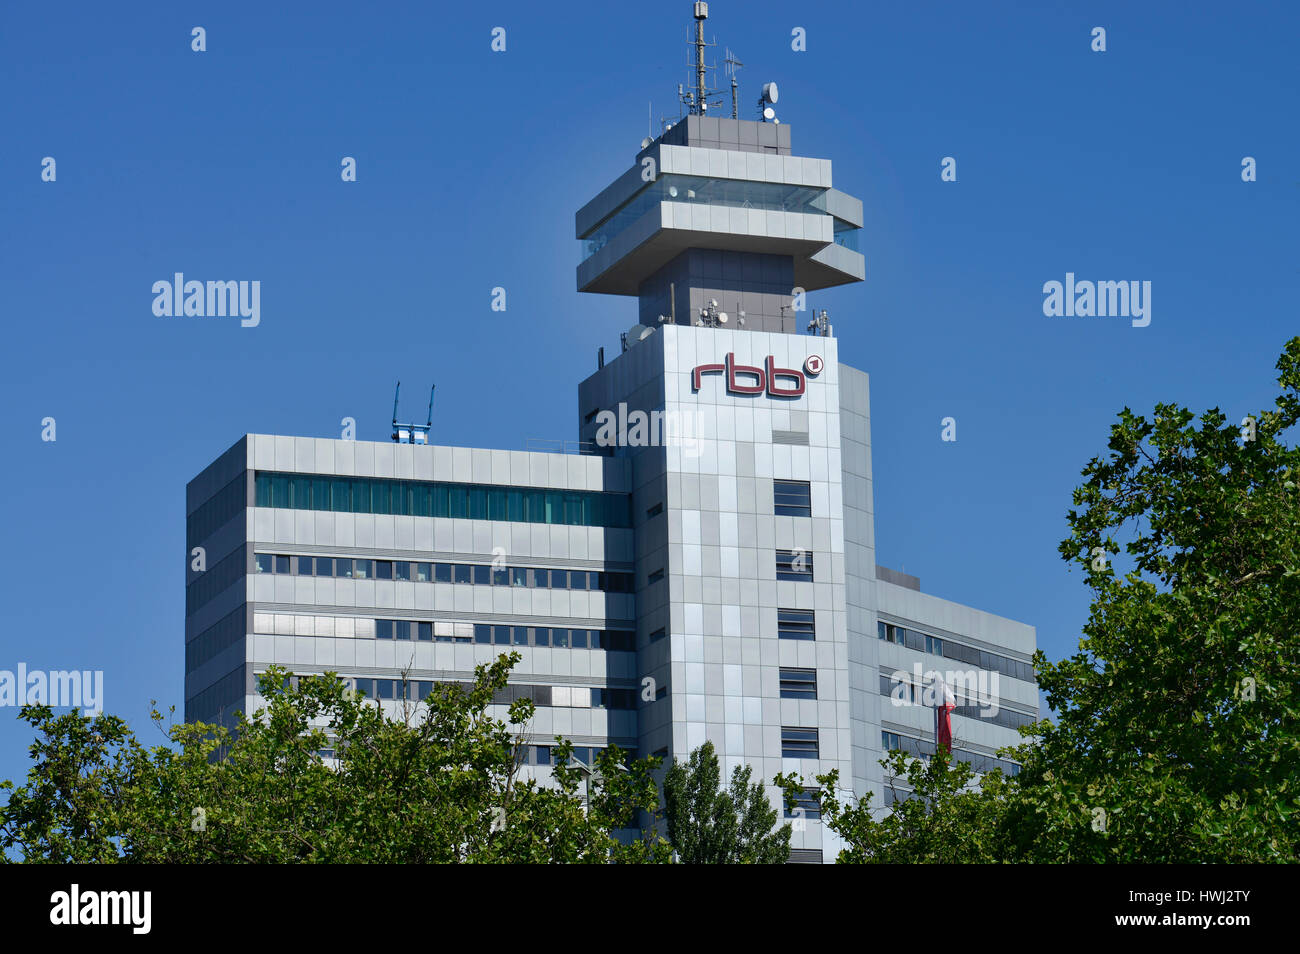 RBB-Hochhaus, Masurenallee, Westend, Charlottenburg, Berlin, Deutschland Stock Photo